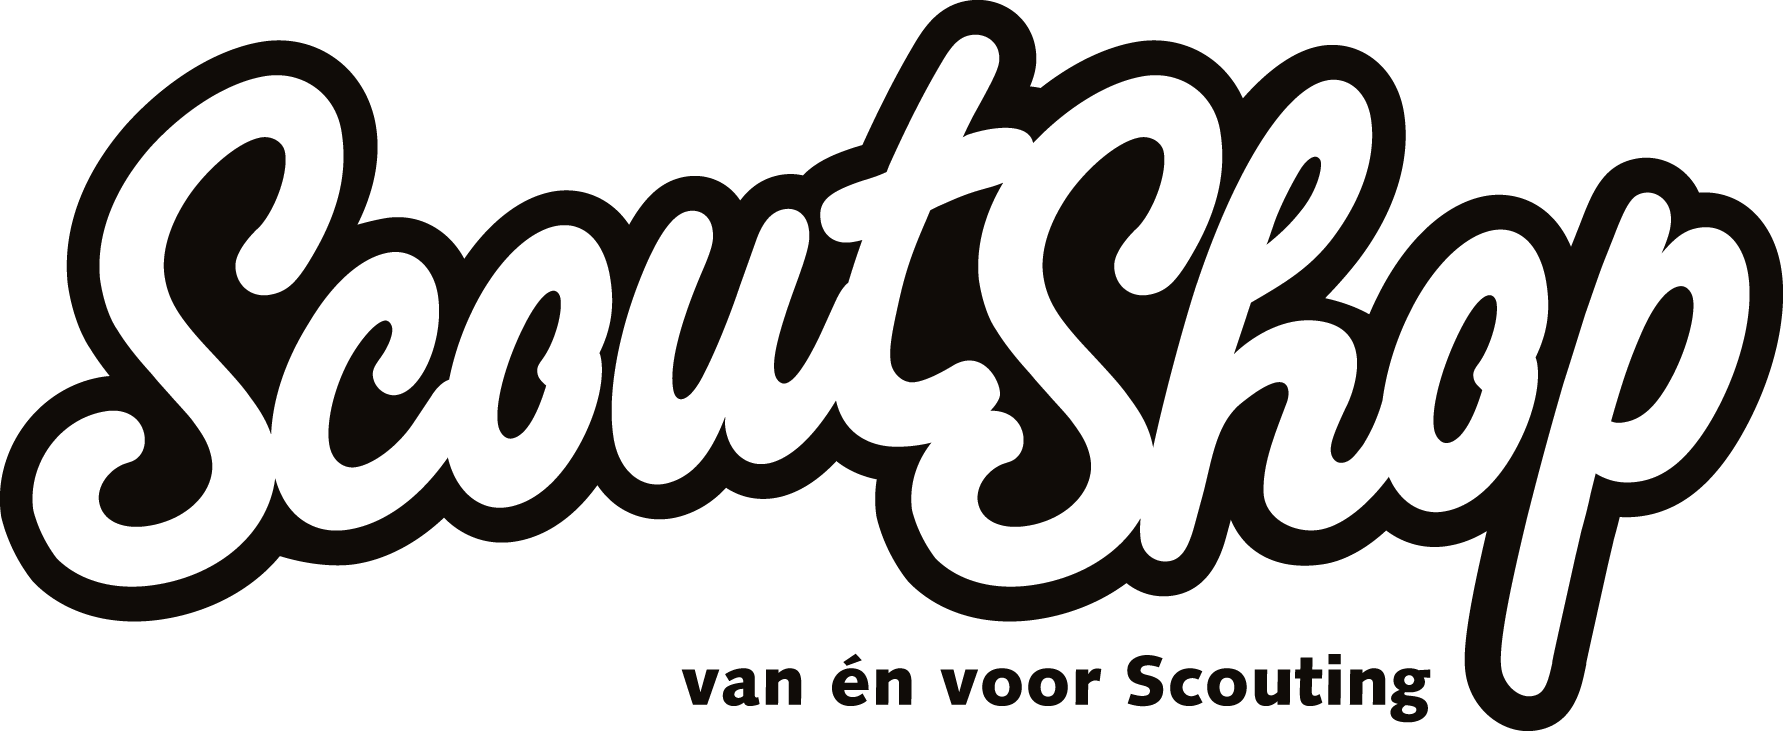 Logo scoutshop 1 kleur 2013